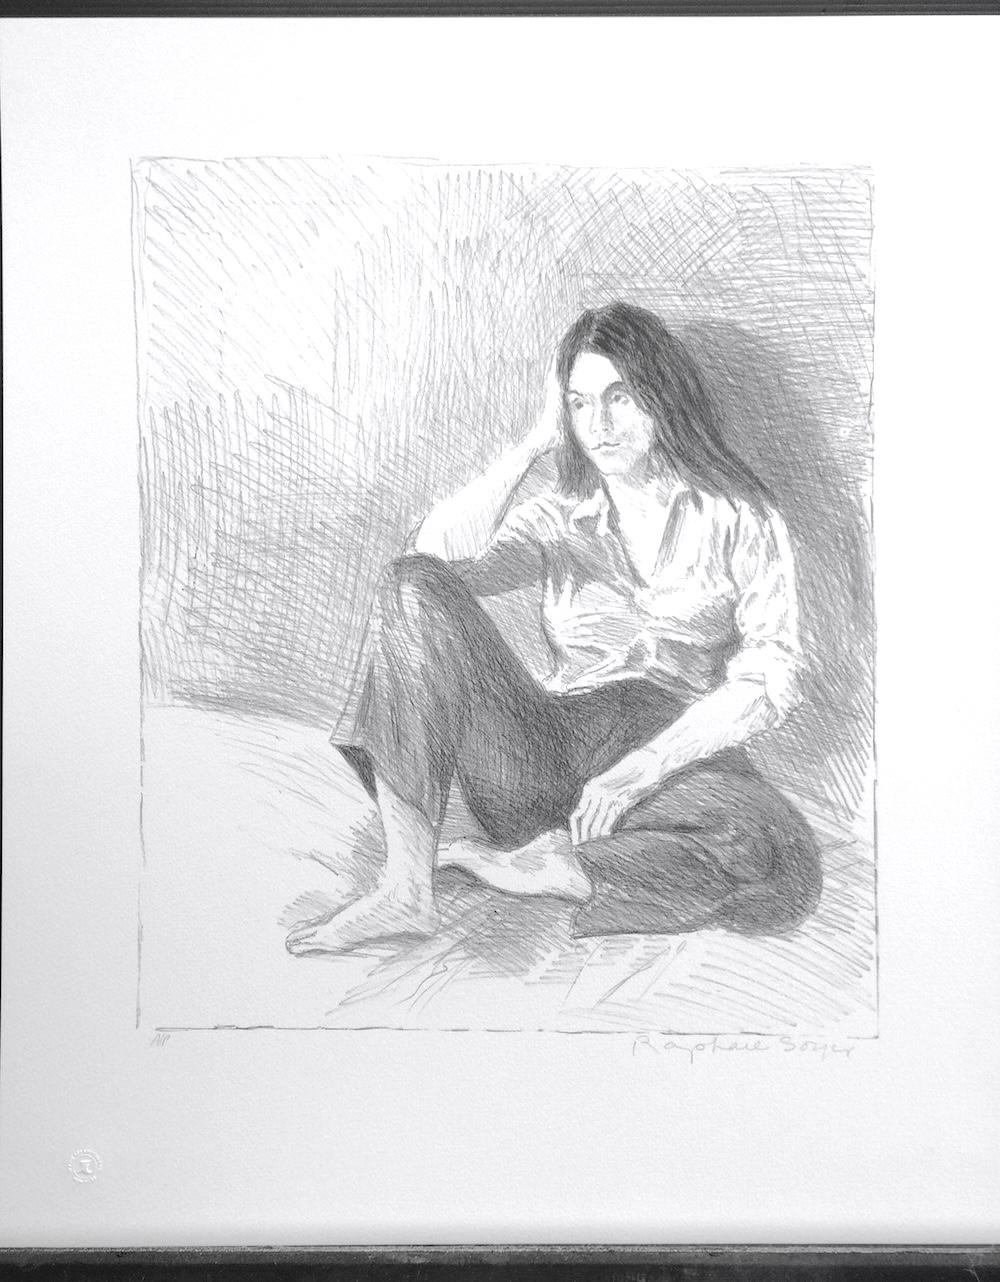 FEMME ASSISE JEANS BLEUS est une lithographie originale dessinée à la main (non reproduite numériquement ou par photo) en édition limitée de l'artiste Raphael Soyer - Peintre russe/américain du réalisme social, 1899-1987. Imprimé à l'aide de